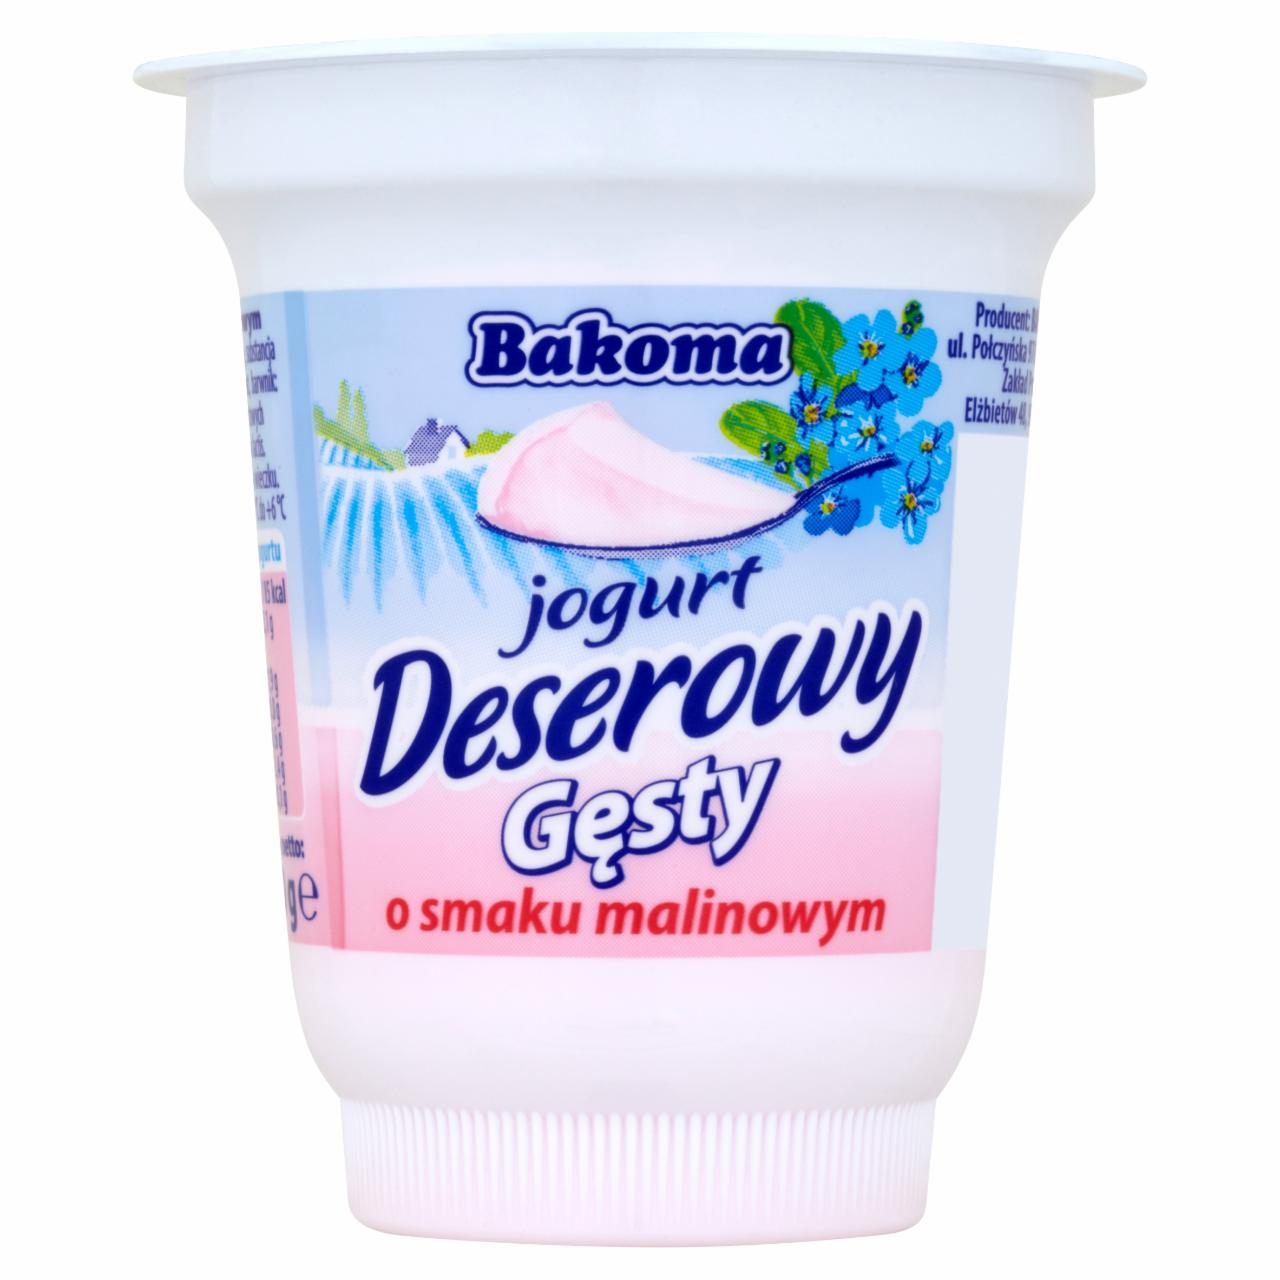 Zdjęcia - Bakoma Jogurt deserowy gęsty o smaku malinowym 150 g